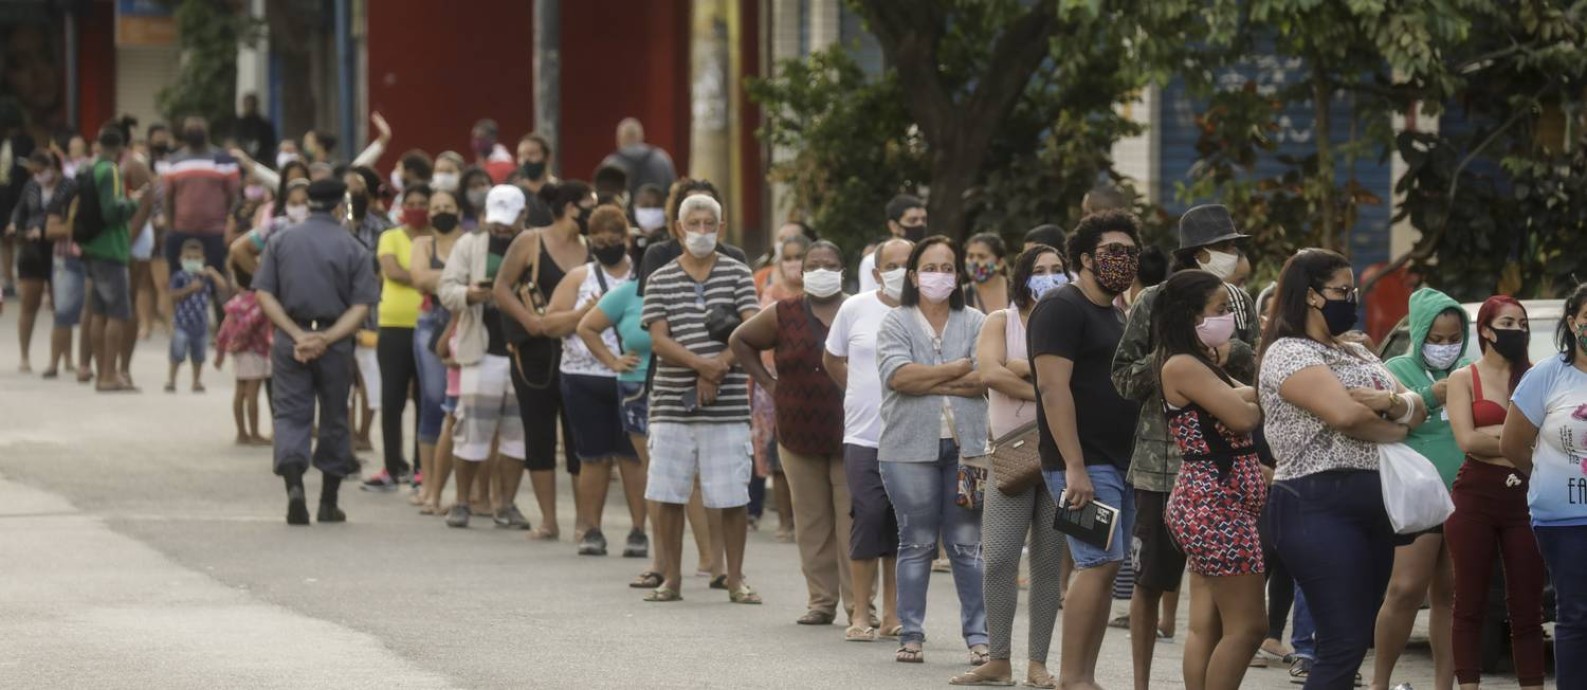 Agência da Caixa com fila de espera para benefícios sociais do governo Foto: Gabriel de Paiva / Agência O Globo